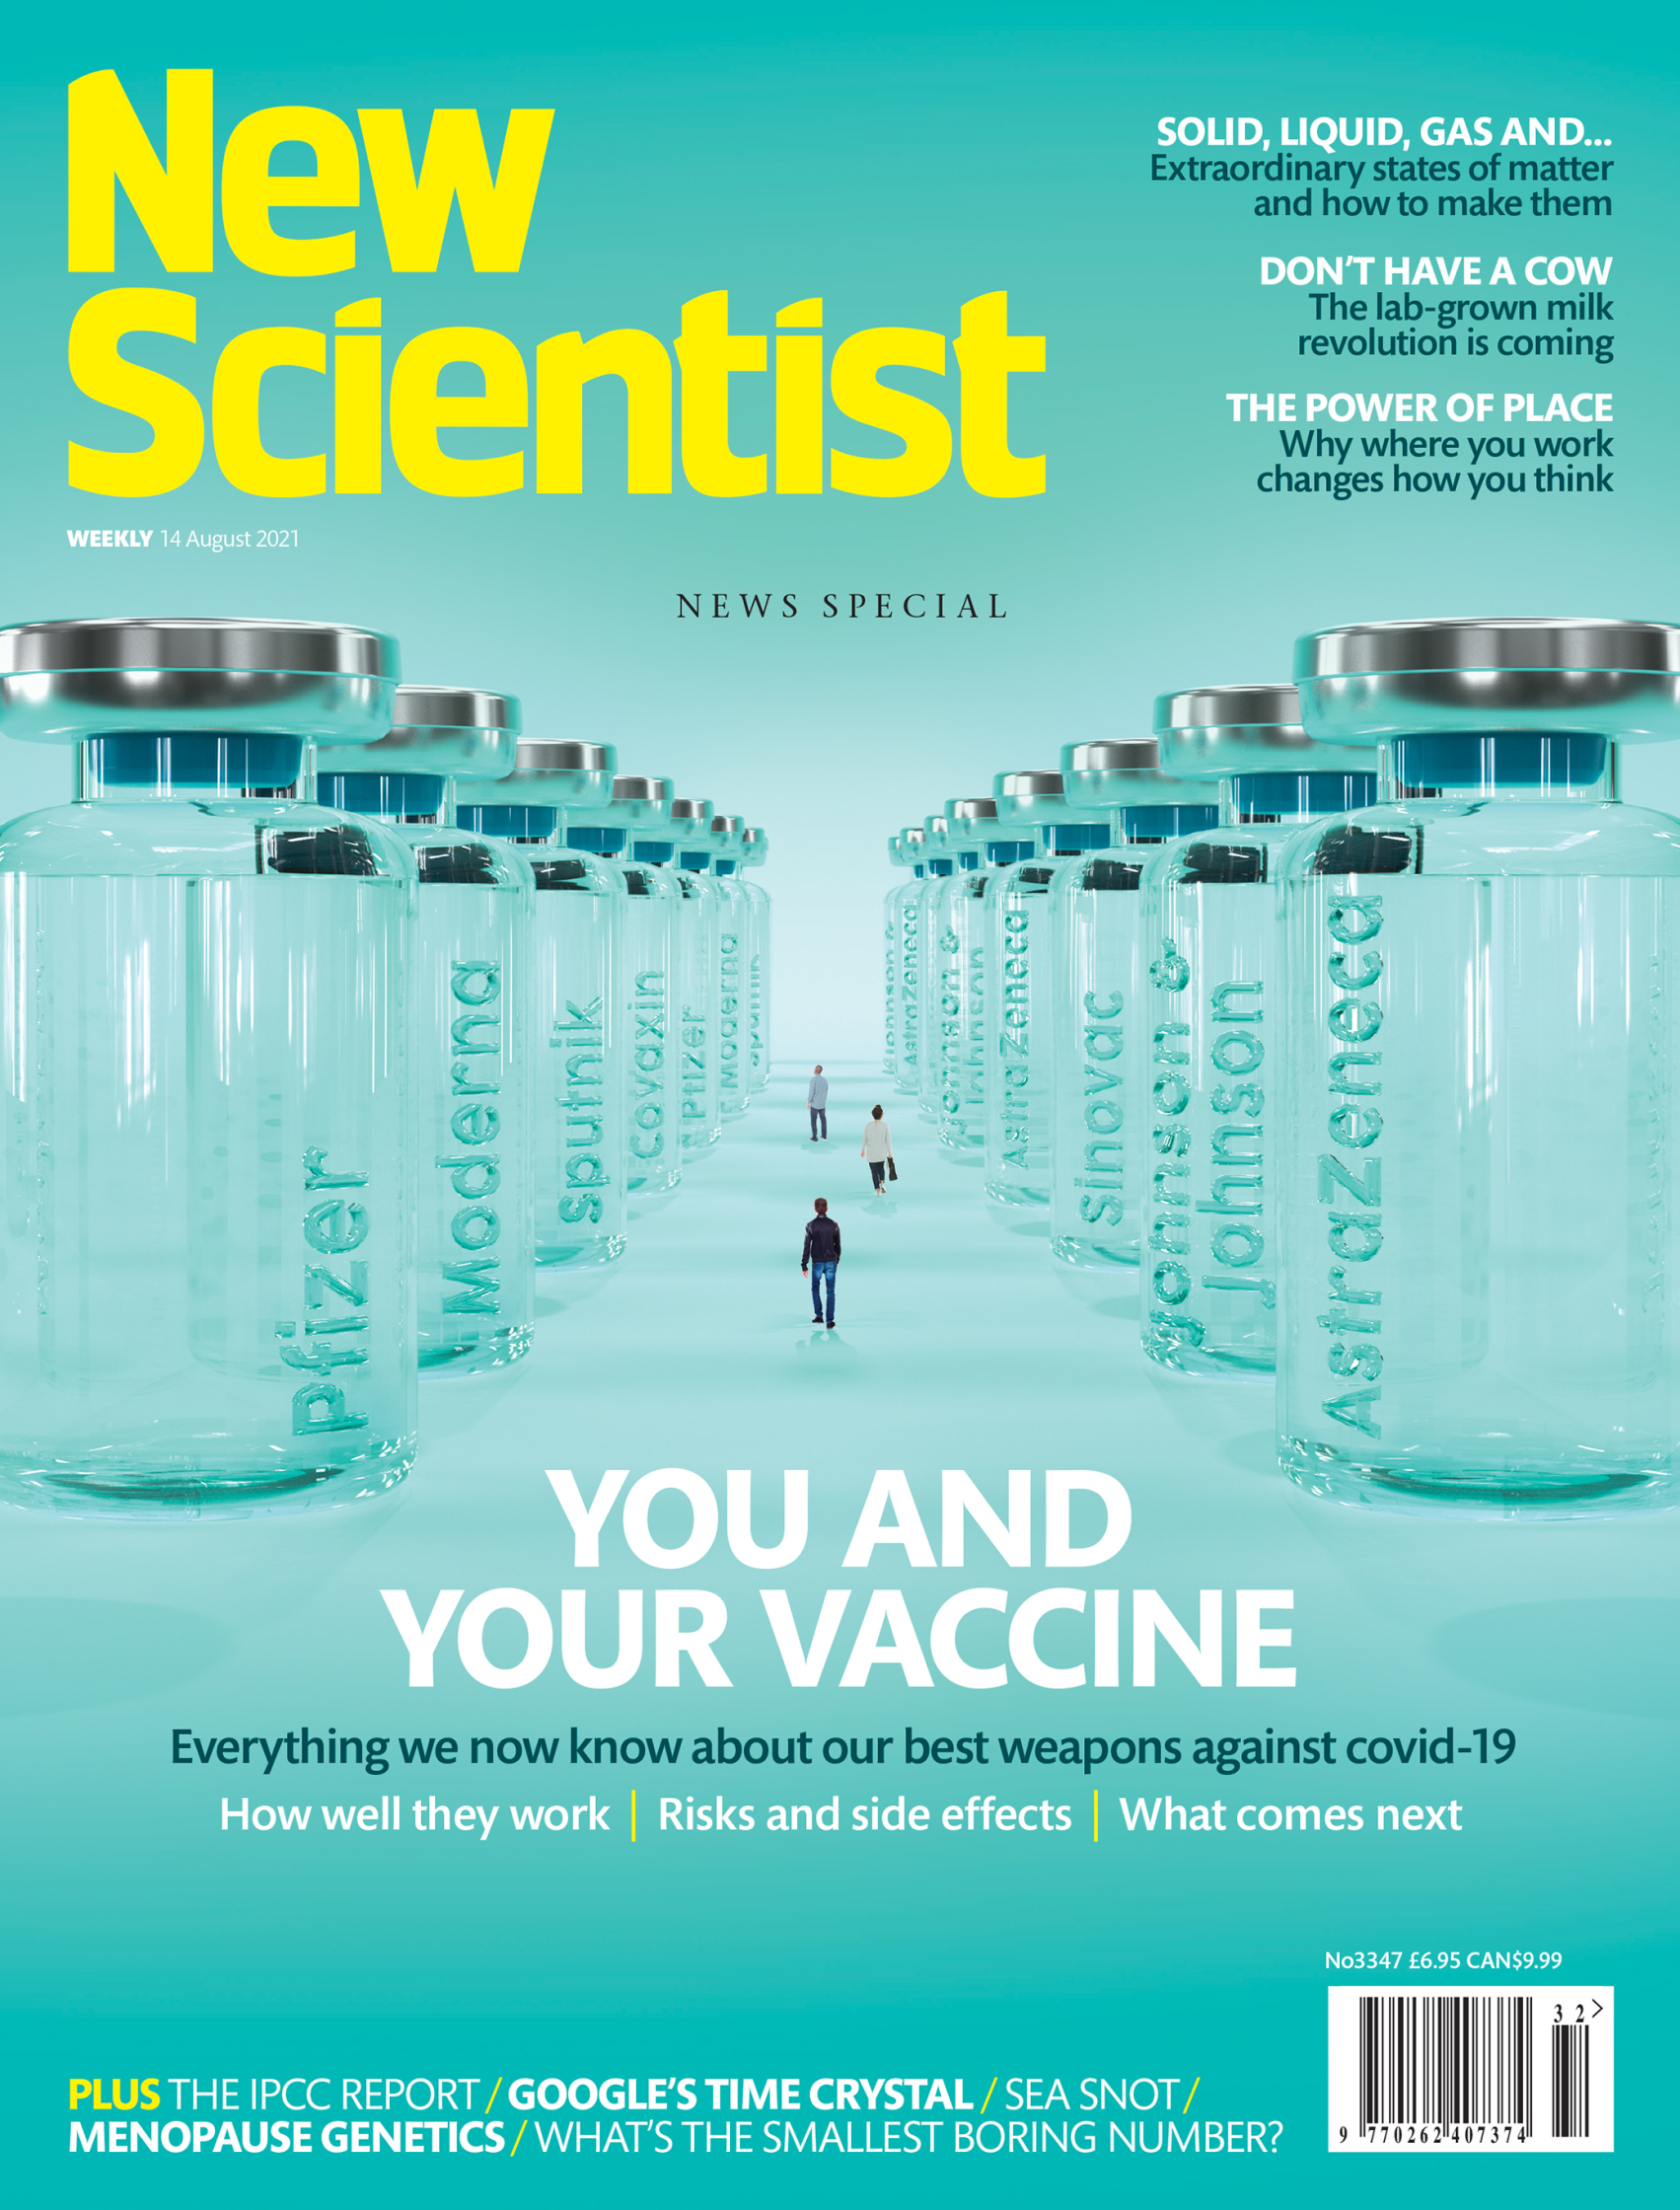 New Scientist full cover.jpg